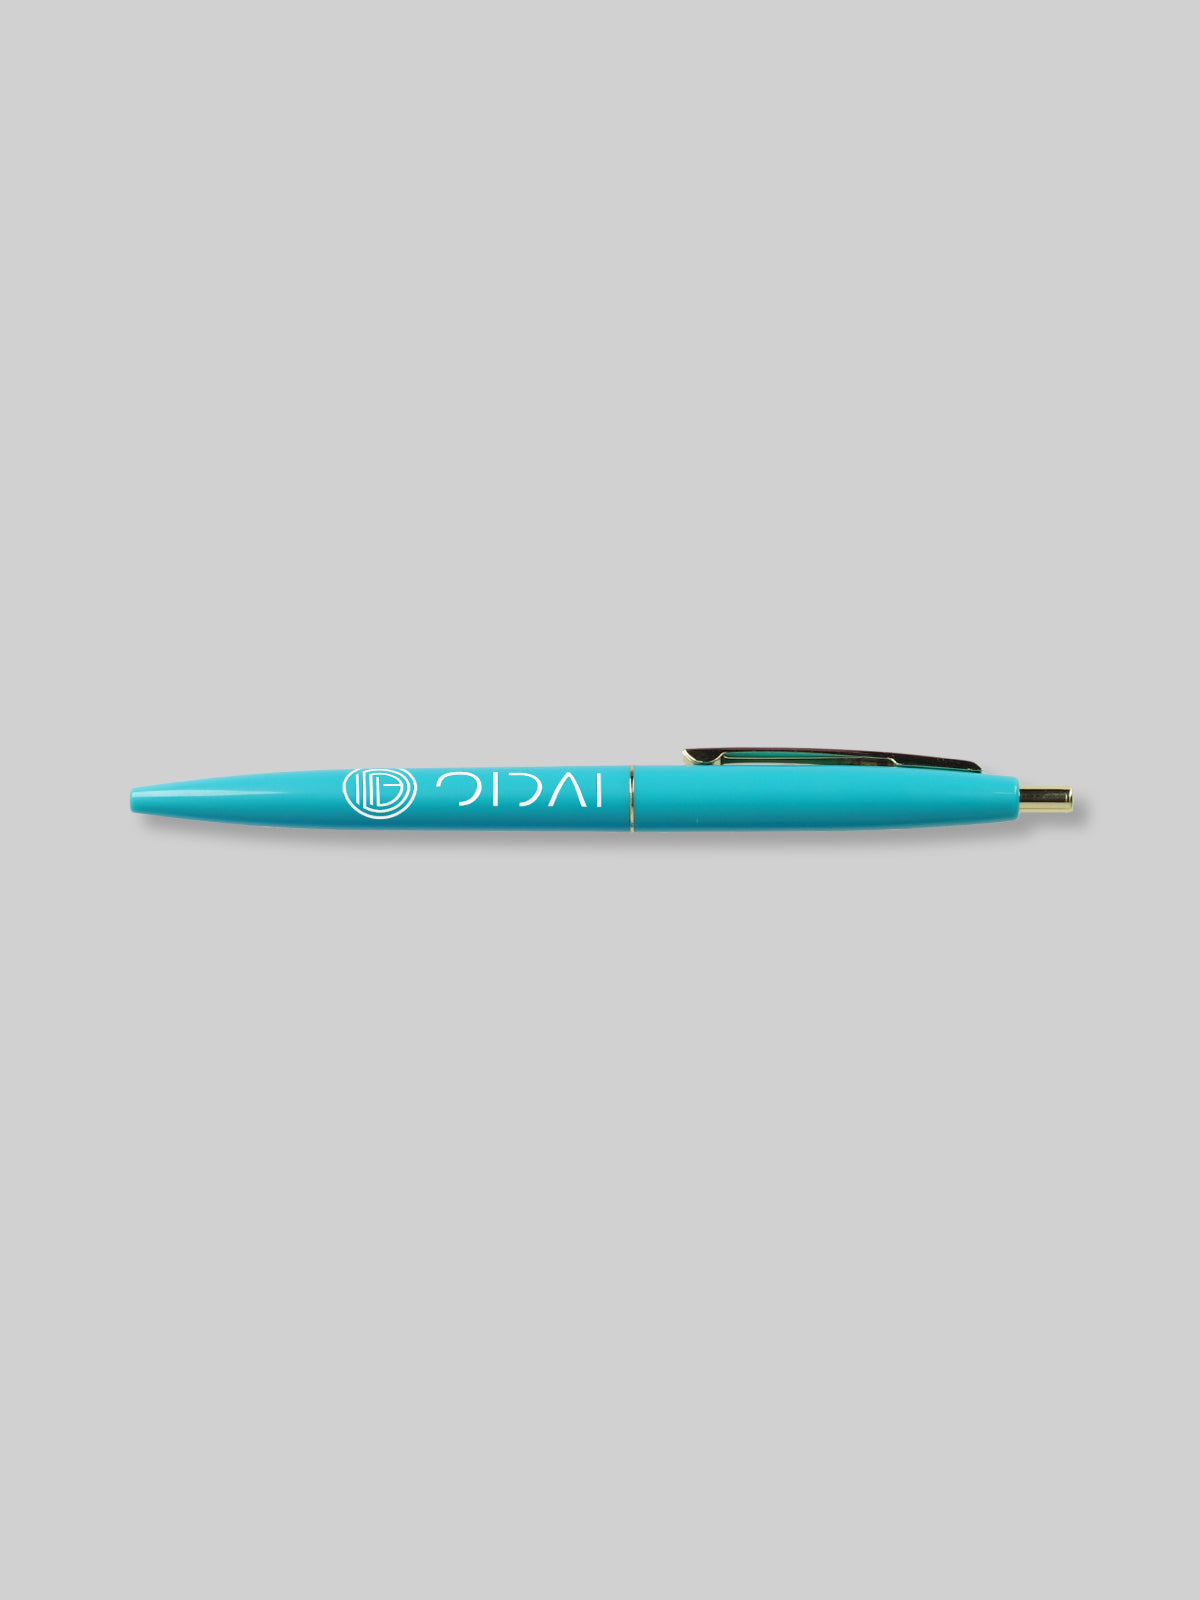 OIDAI BIC クリックゴールドボールペン サークルロゴ ティールグリーン